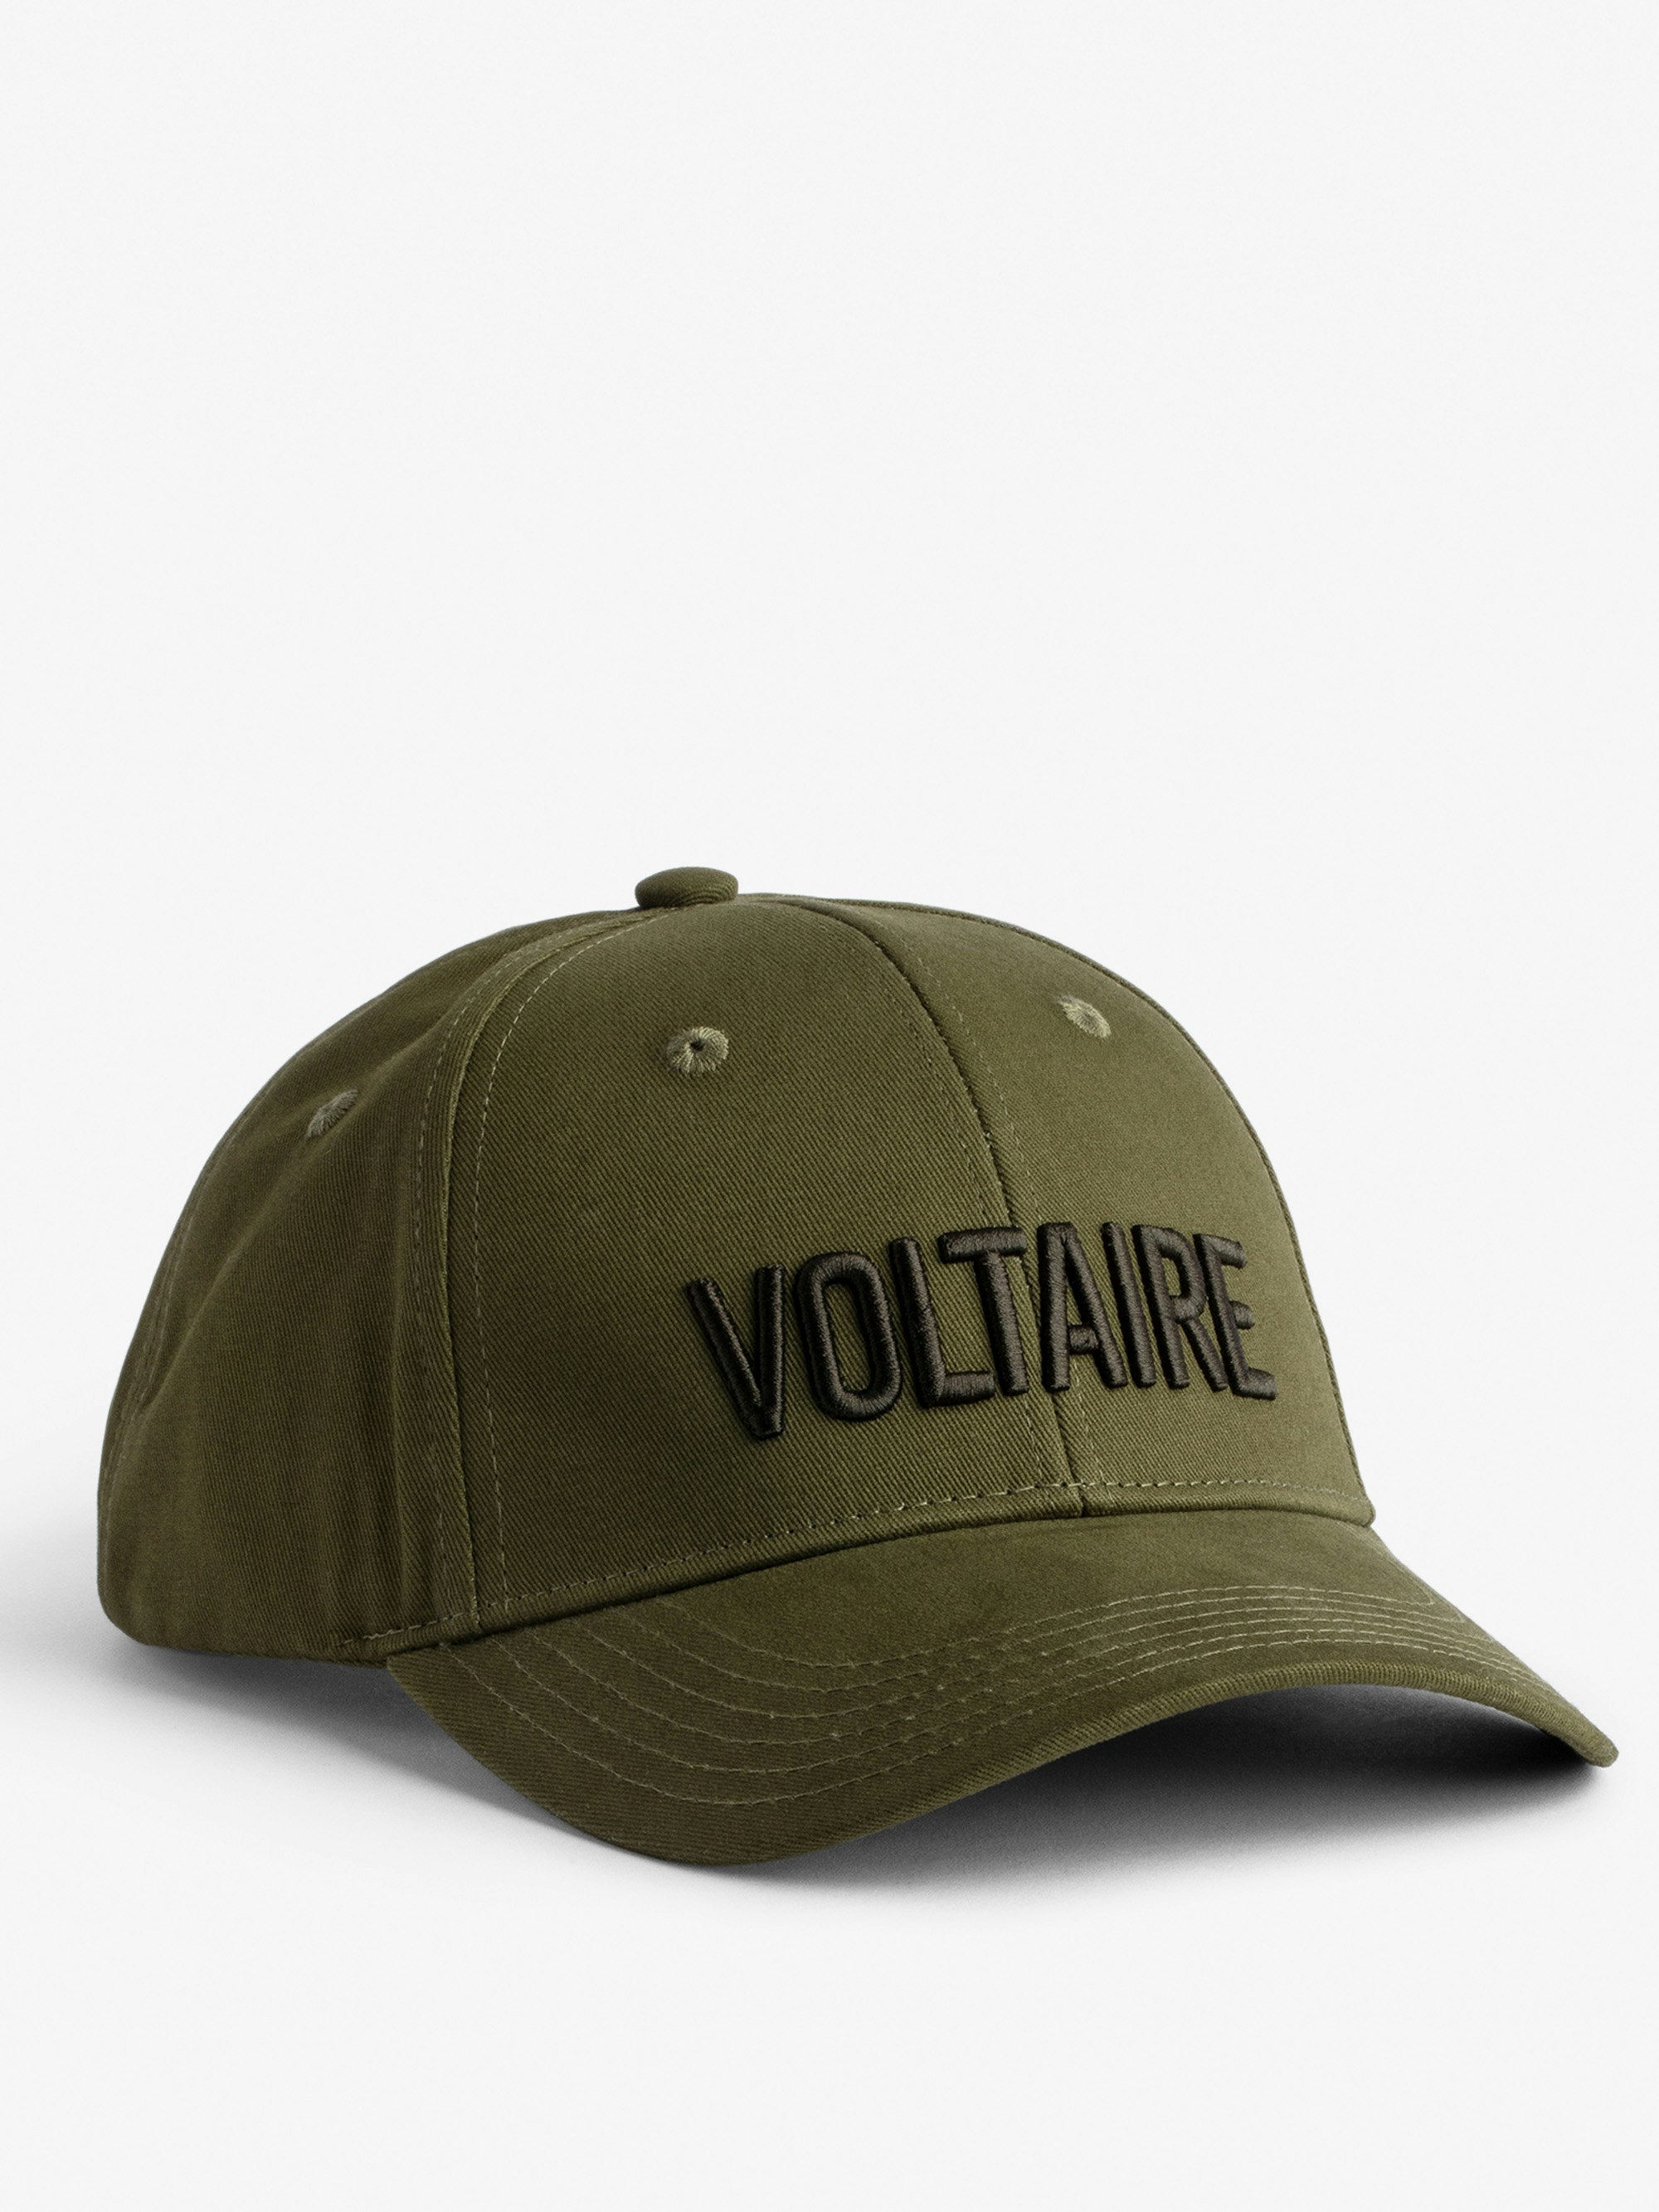 Klelia Voltaire Cap - Men's khaki cotton cap embroidered “Voltaire”.